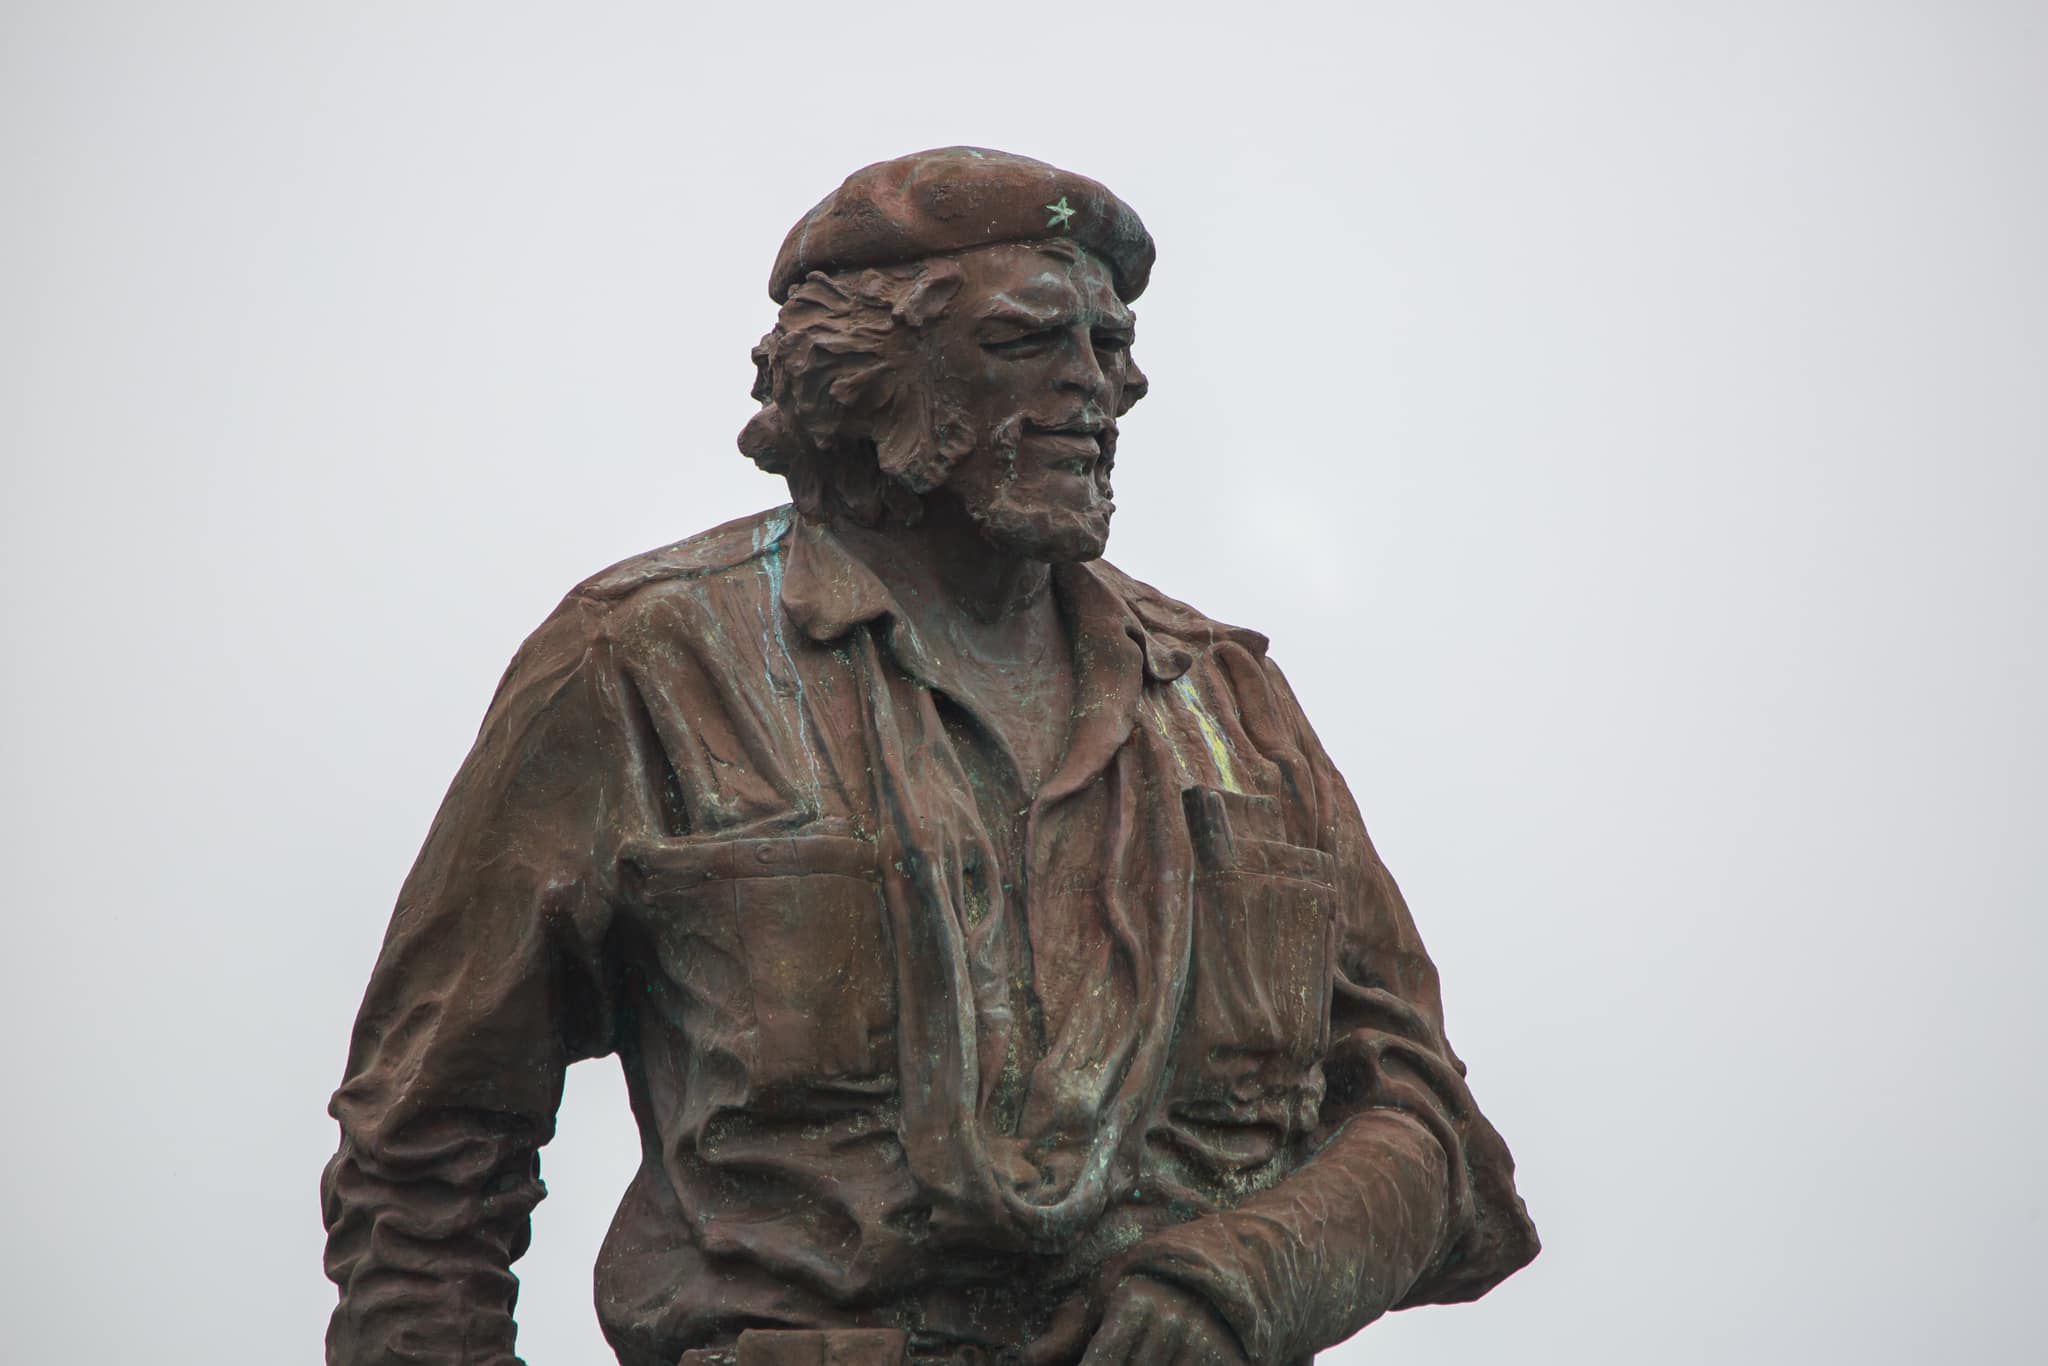 Conjunto Escultórico Memorial Comandante Ernesto Che Guevara y la imponente escultura de más de 6 metros de altura